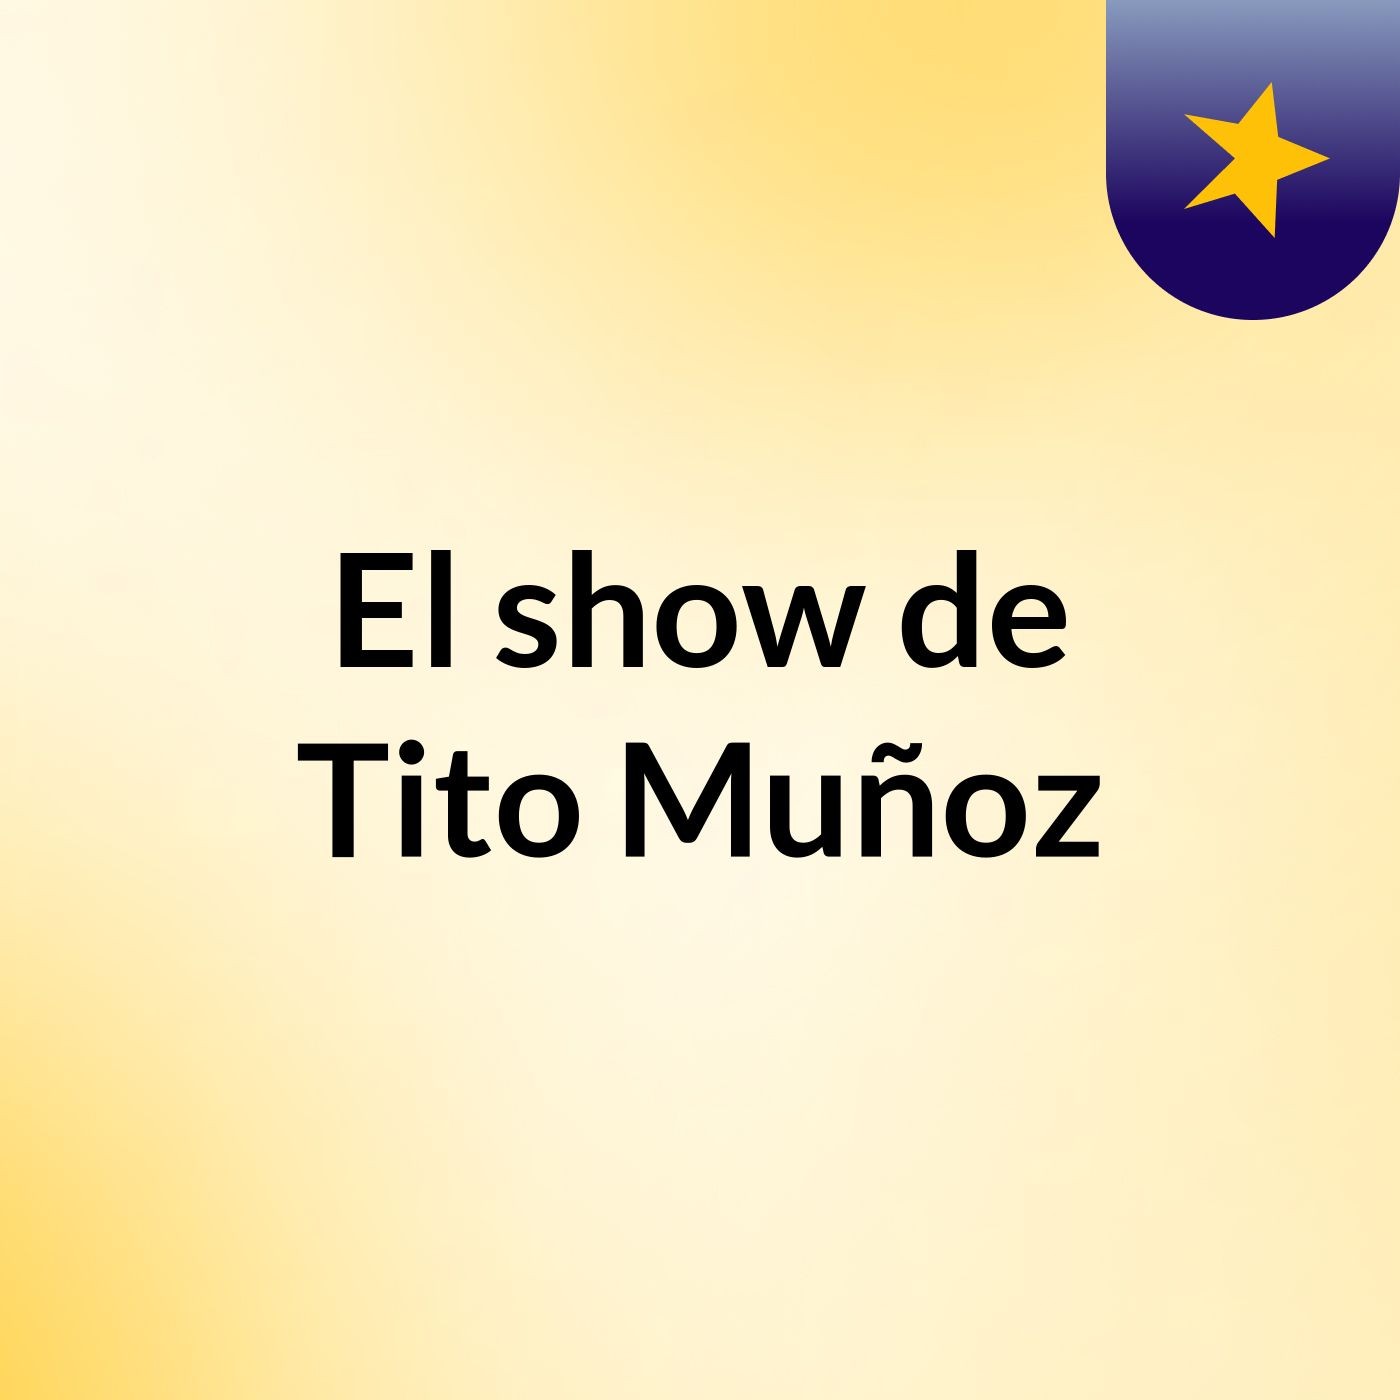 El show de Tito Muñoz